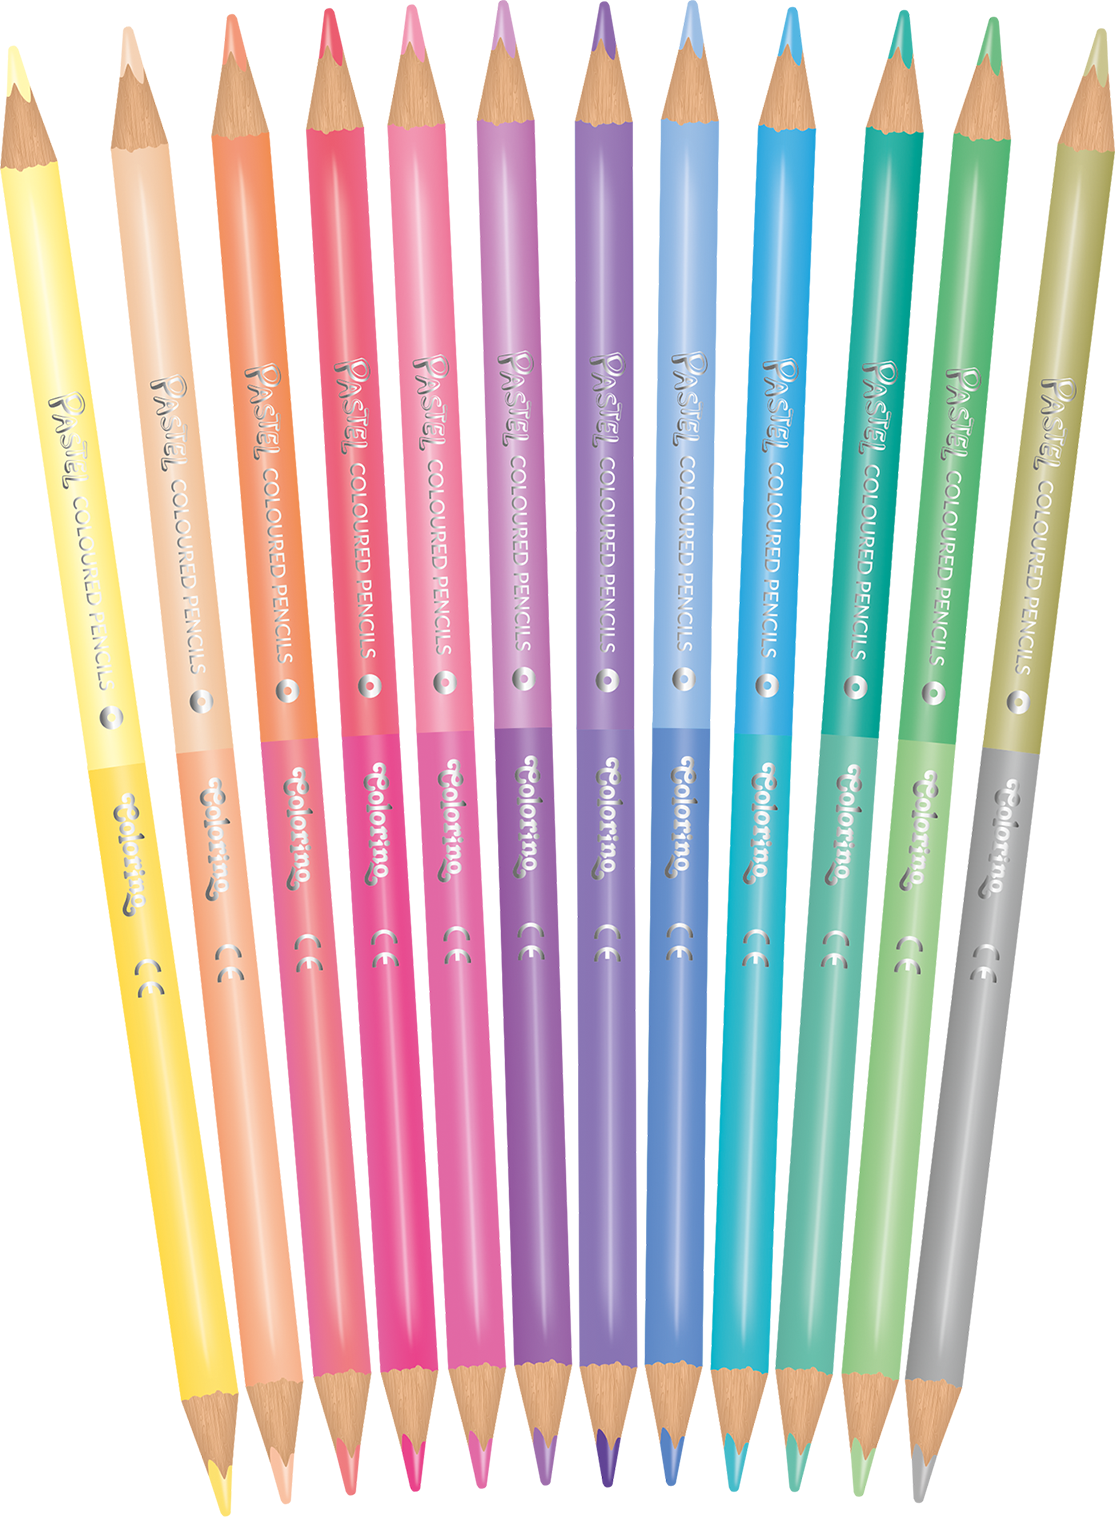 Набор цветных двусторонних карандашей CoolPack Пастель,12 шт. (87737PTR) - фото 2